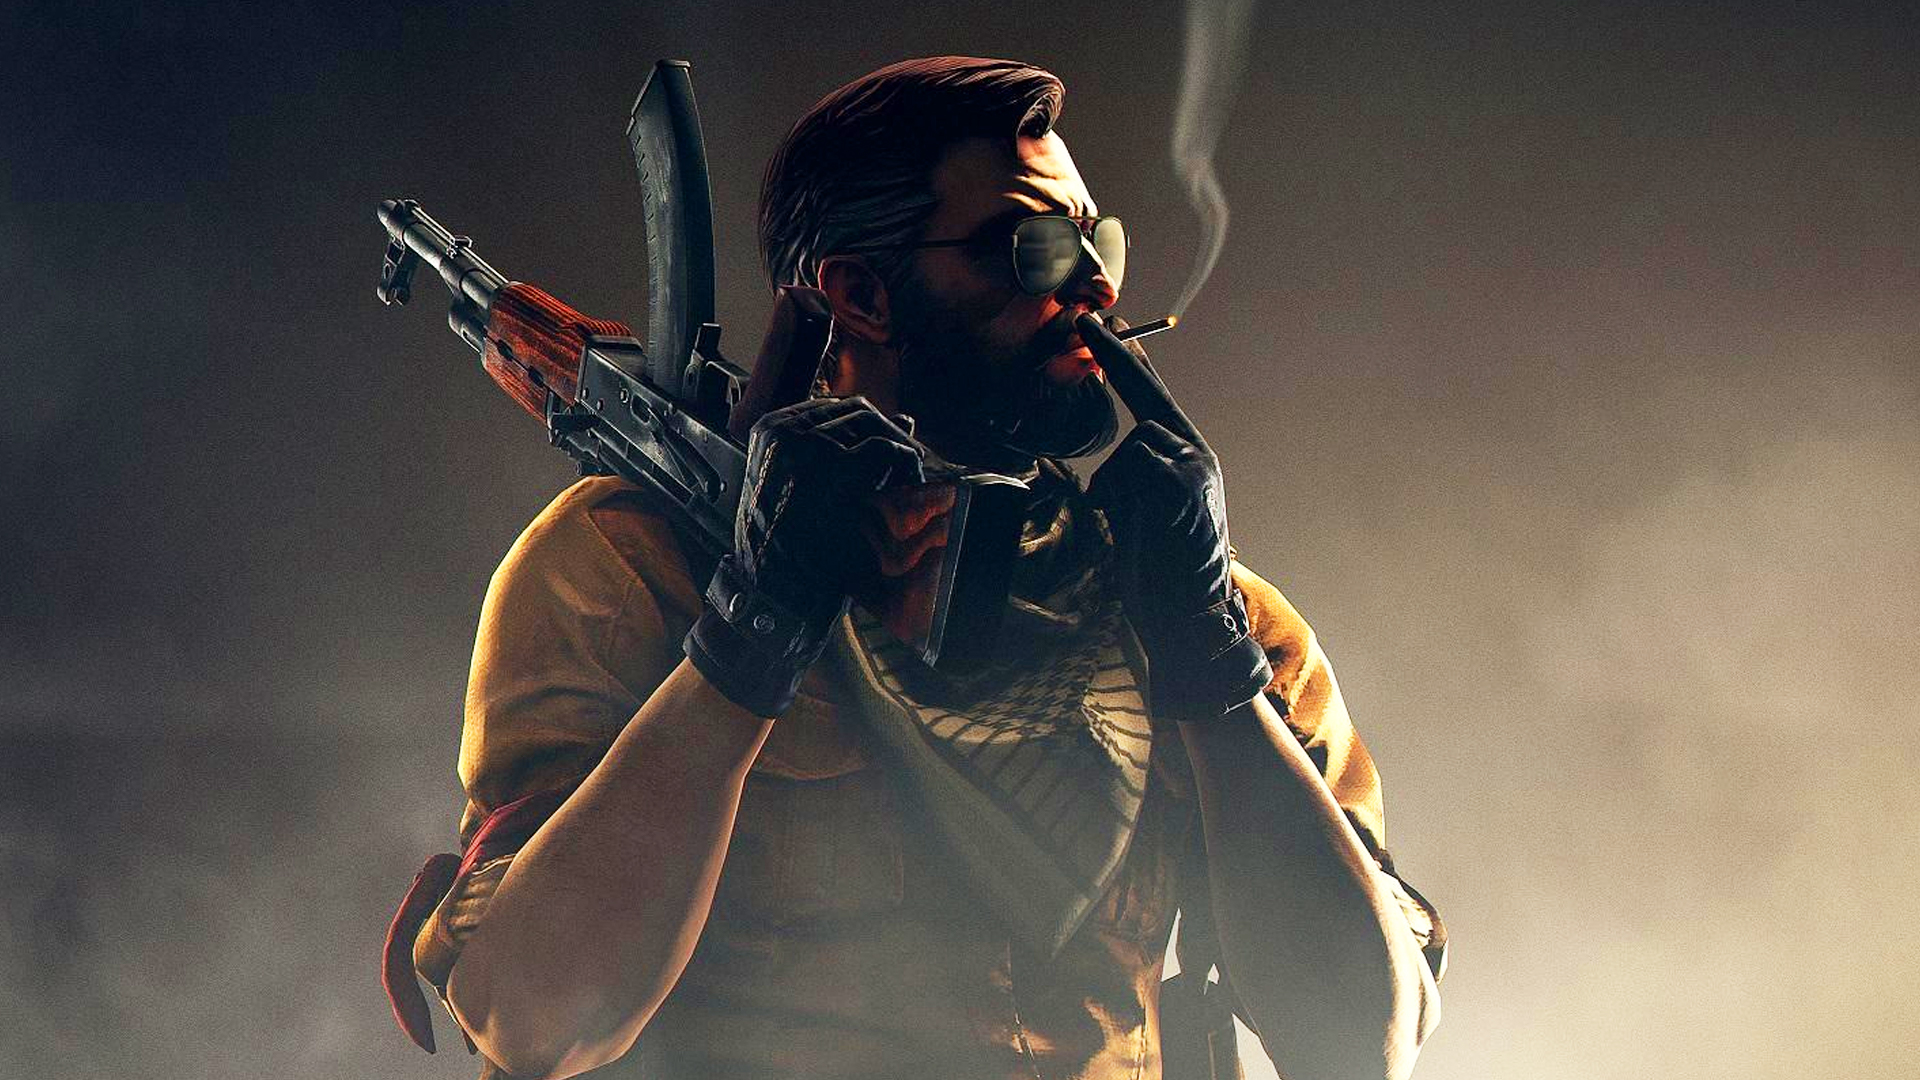 Counter-Strike 2 leaks claim CSGO Source 2 beta is weeks away